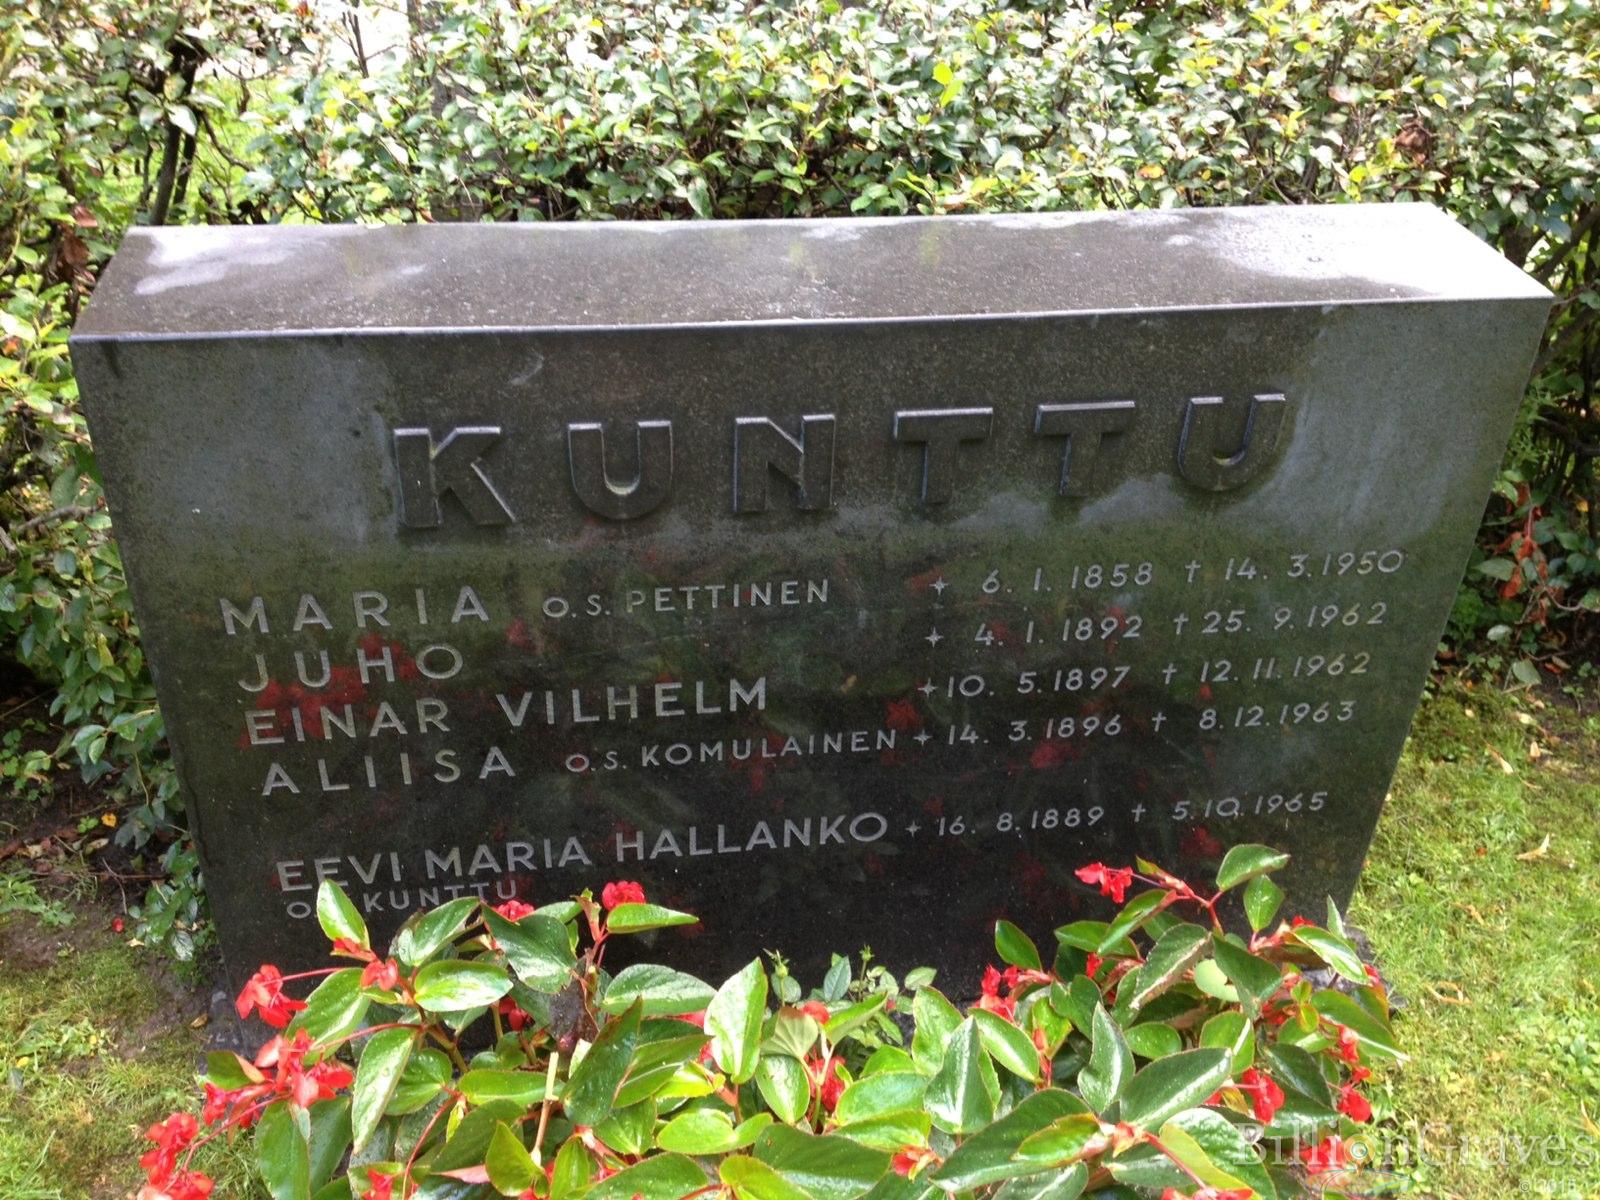 Кунтту Эйнар с матерью, братом и сестрой. могила в Хельсинки.jpg